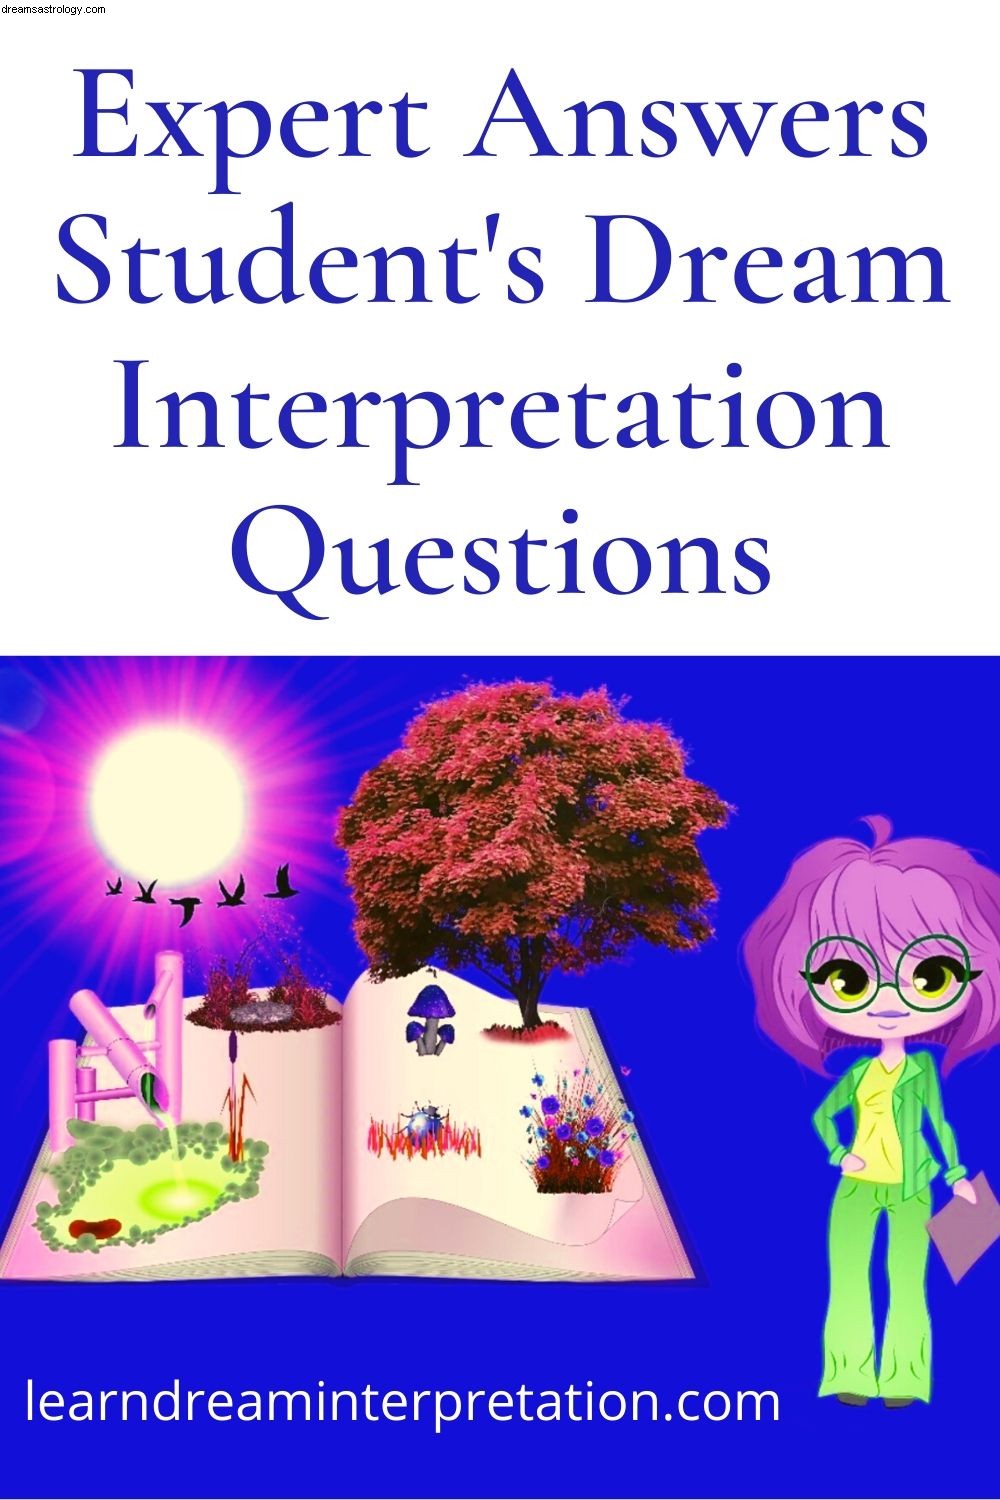 夢の解釈に関する質問への回答 